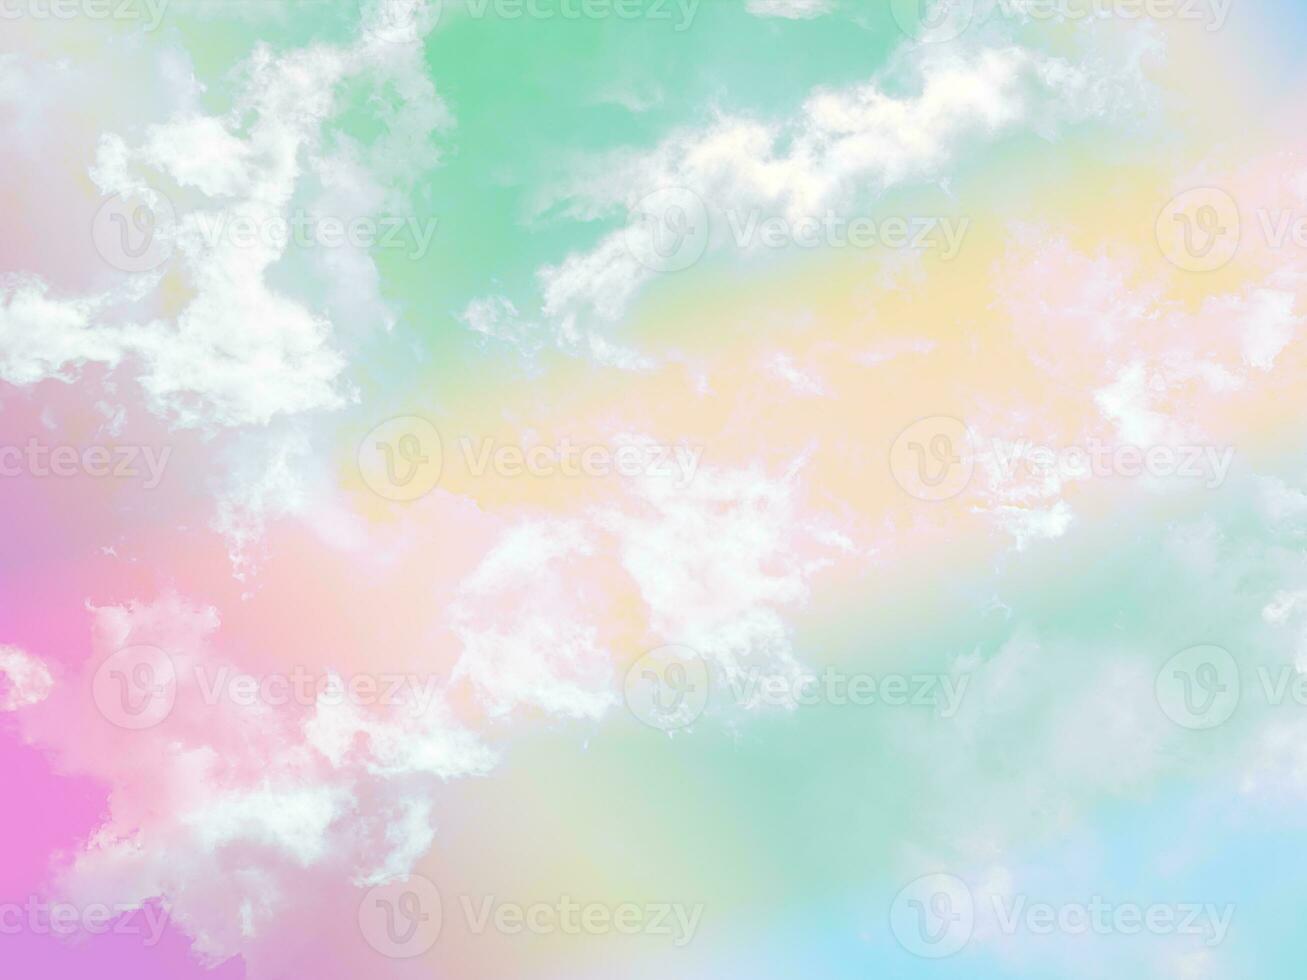 beleza doce pastel verde amarelo colorido com nuvens fofas no céu. imagem multicolorida do arco-íris. luz de crescimento de fantasia abstrata foto